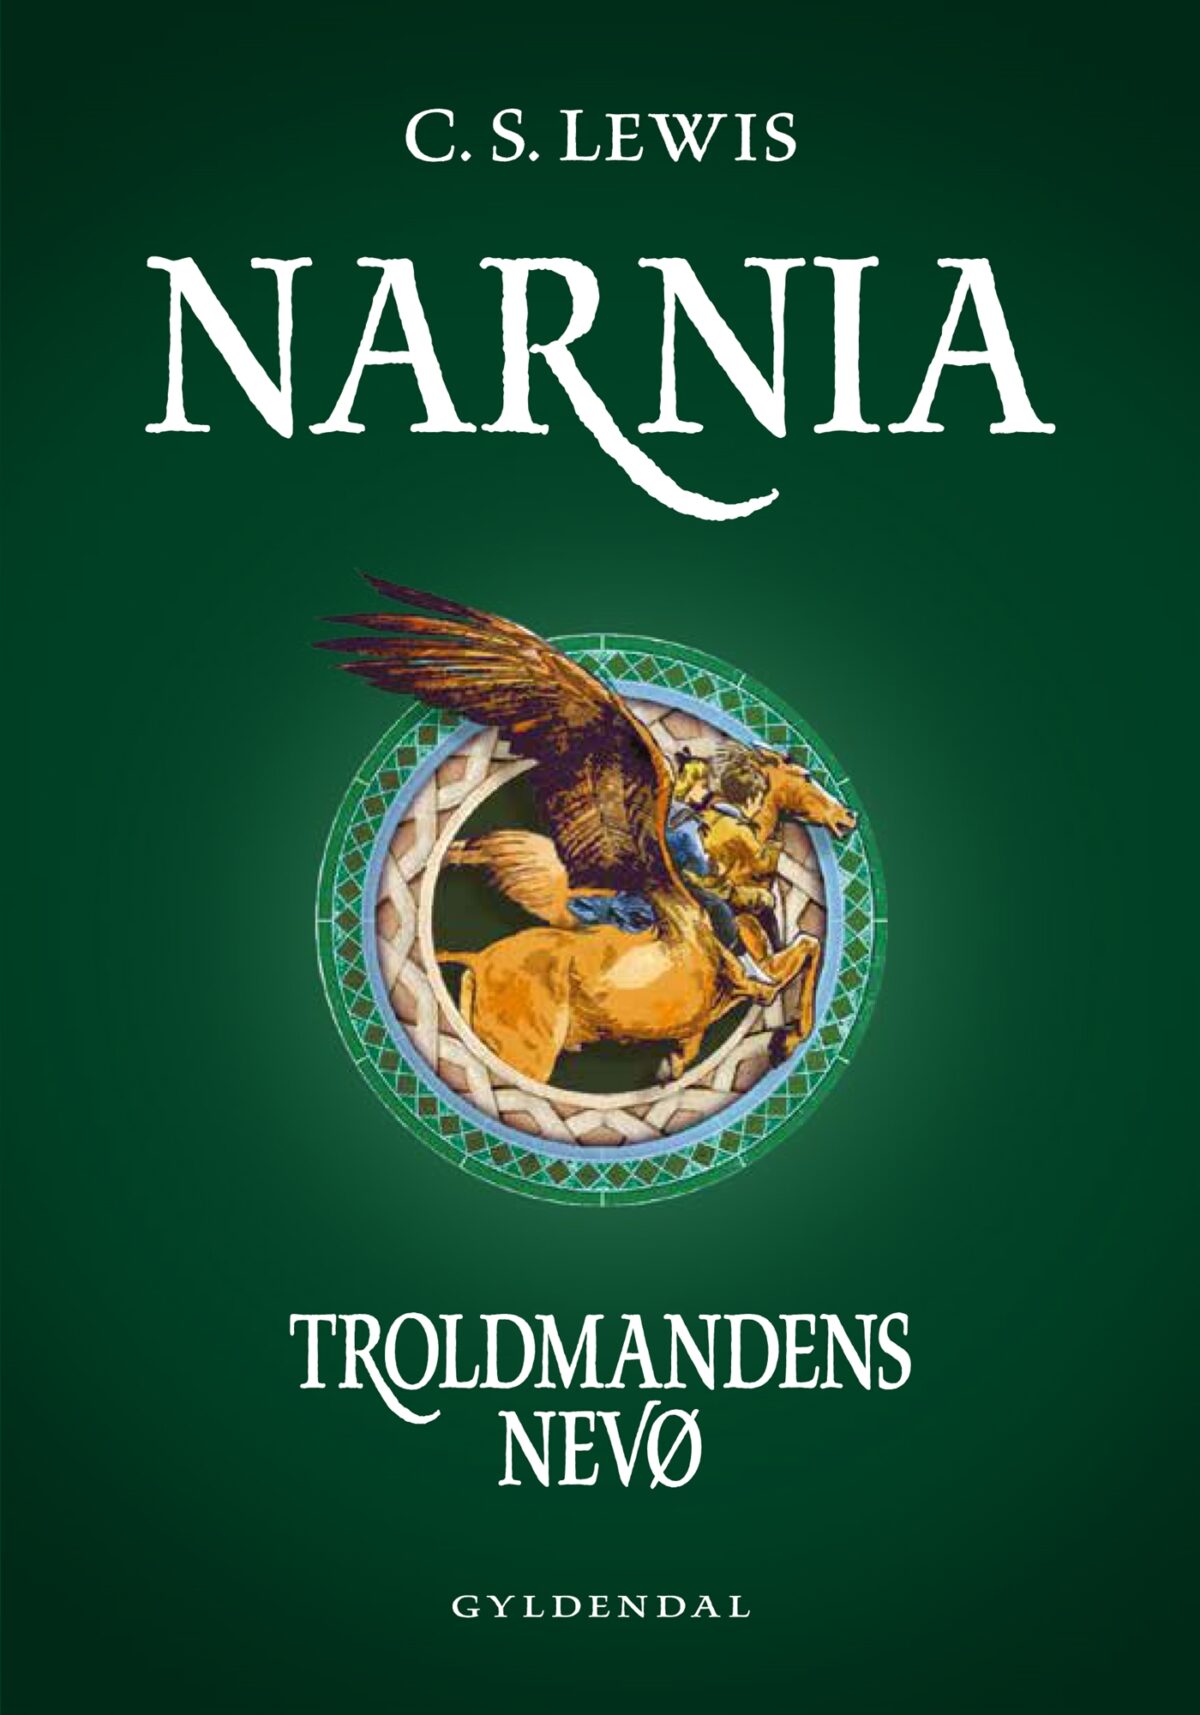 OnlyByGrace Narnia 1 Troldmandens nevø